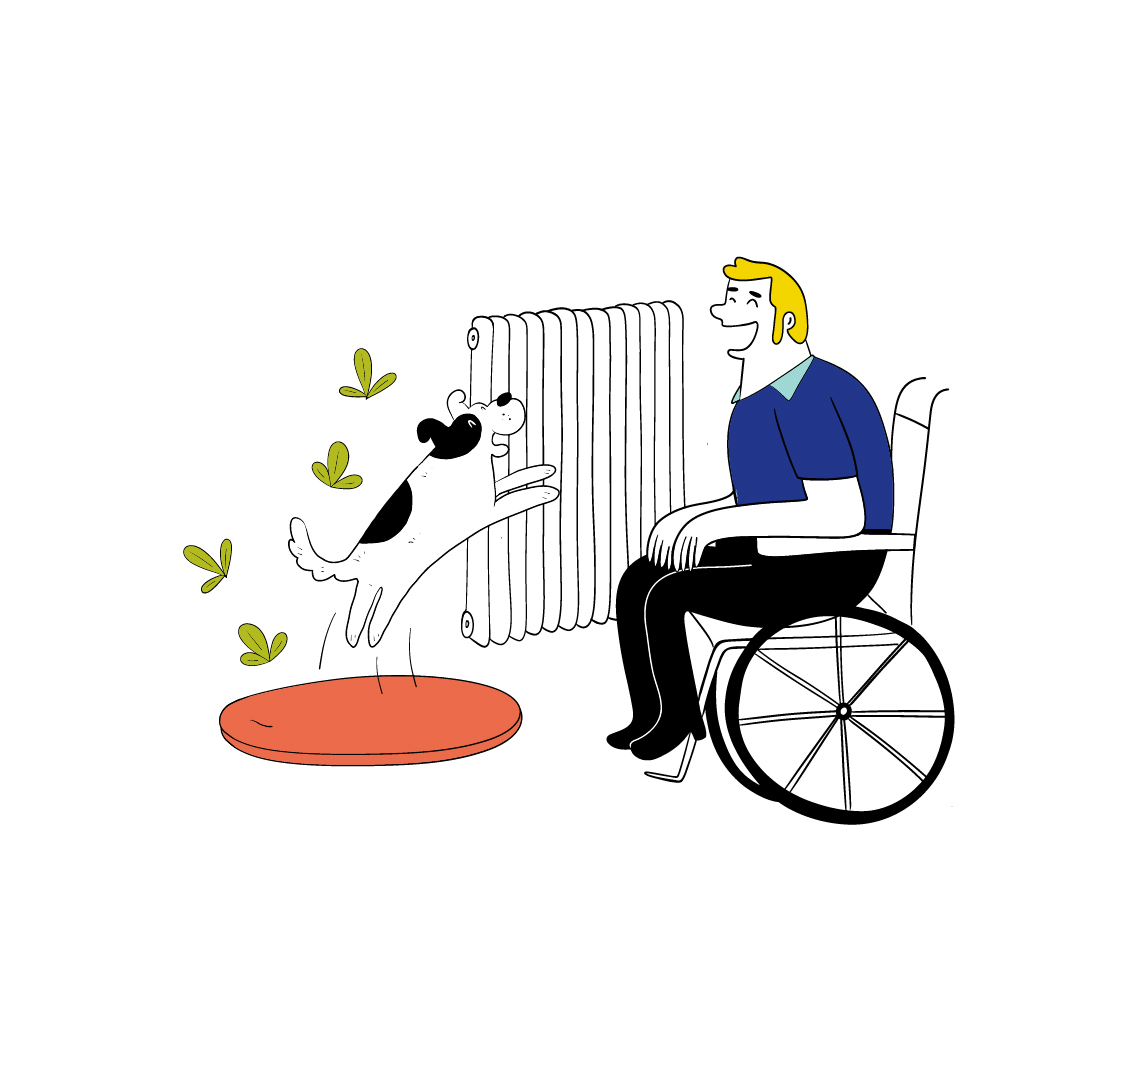 Ein lächelnder Mann sitzt in einem Rollstuhl. Sein Hund springt vor ihm freudig in die Luft. Im Hintergrund ist ein Heizkörper.